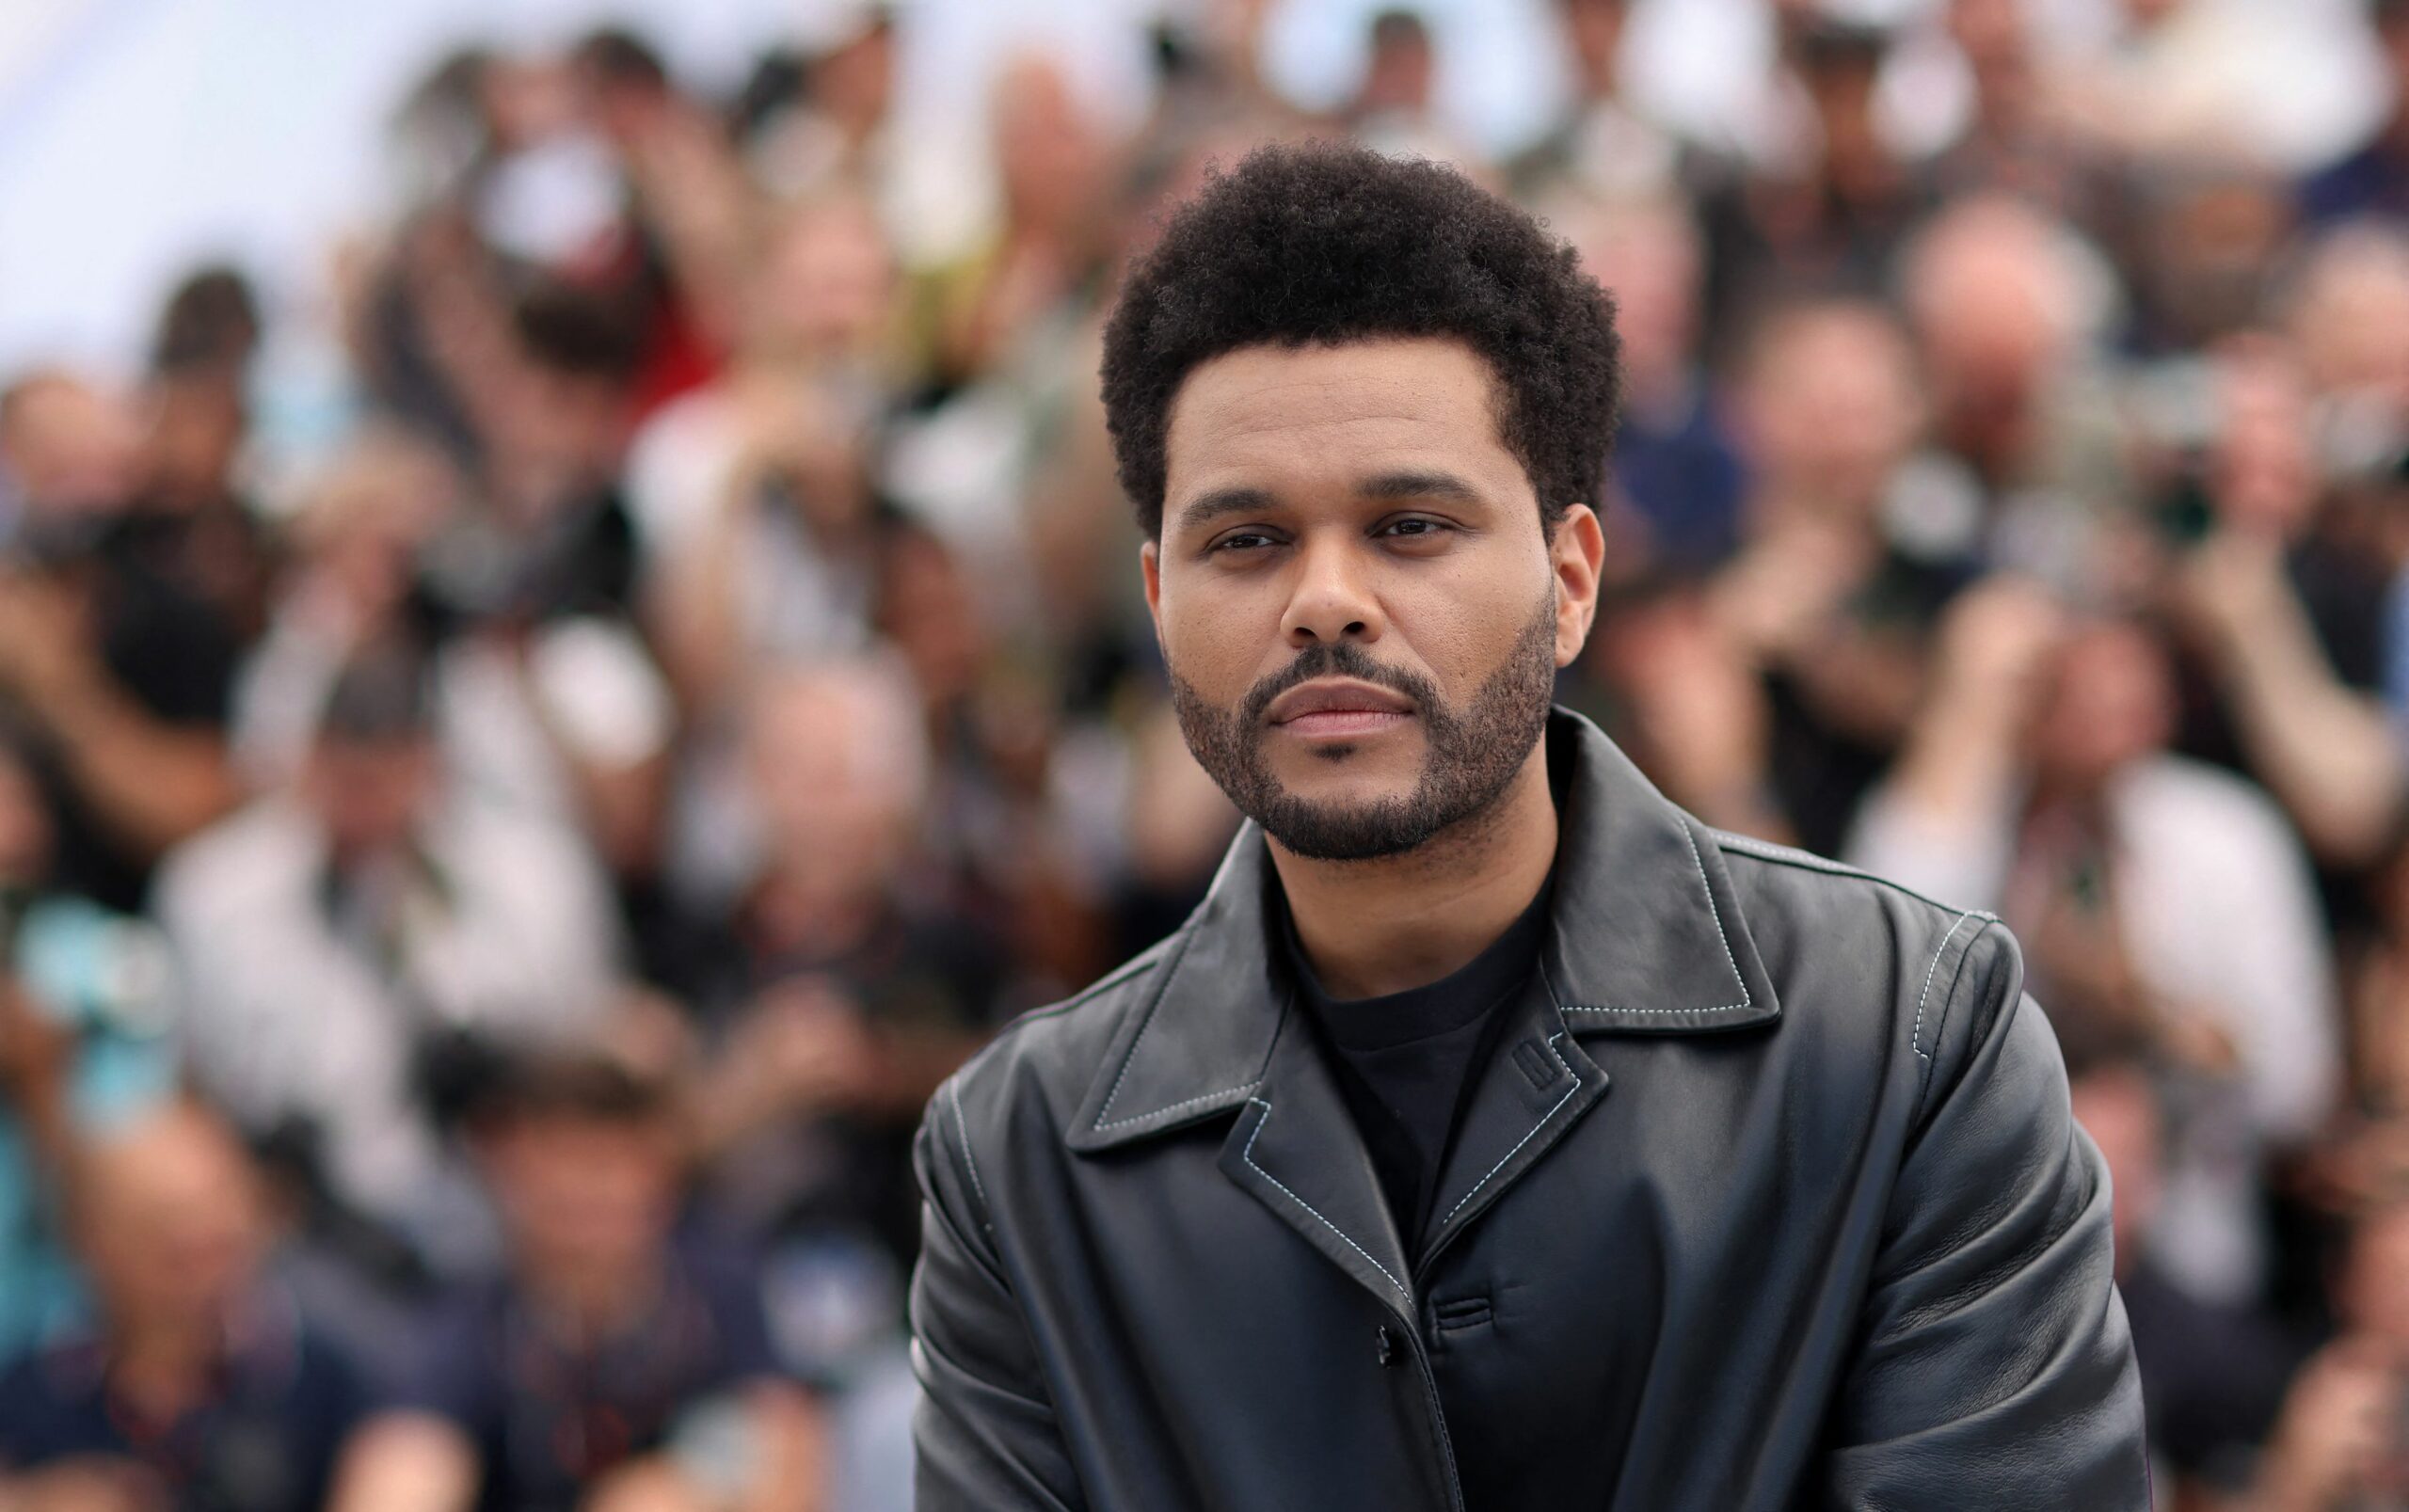 Sosia lui The Weeknd face ravagii în online. I-ai dat follow?